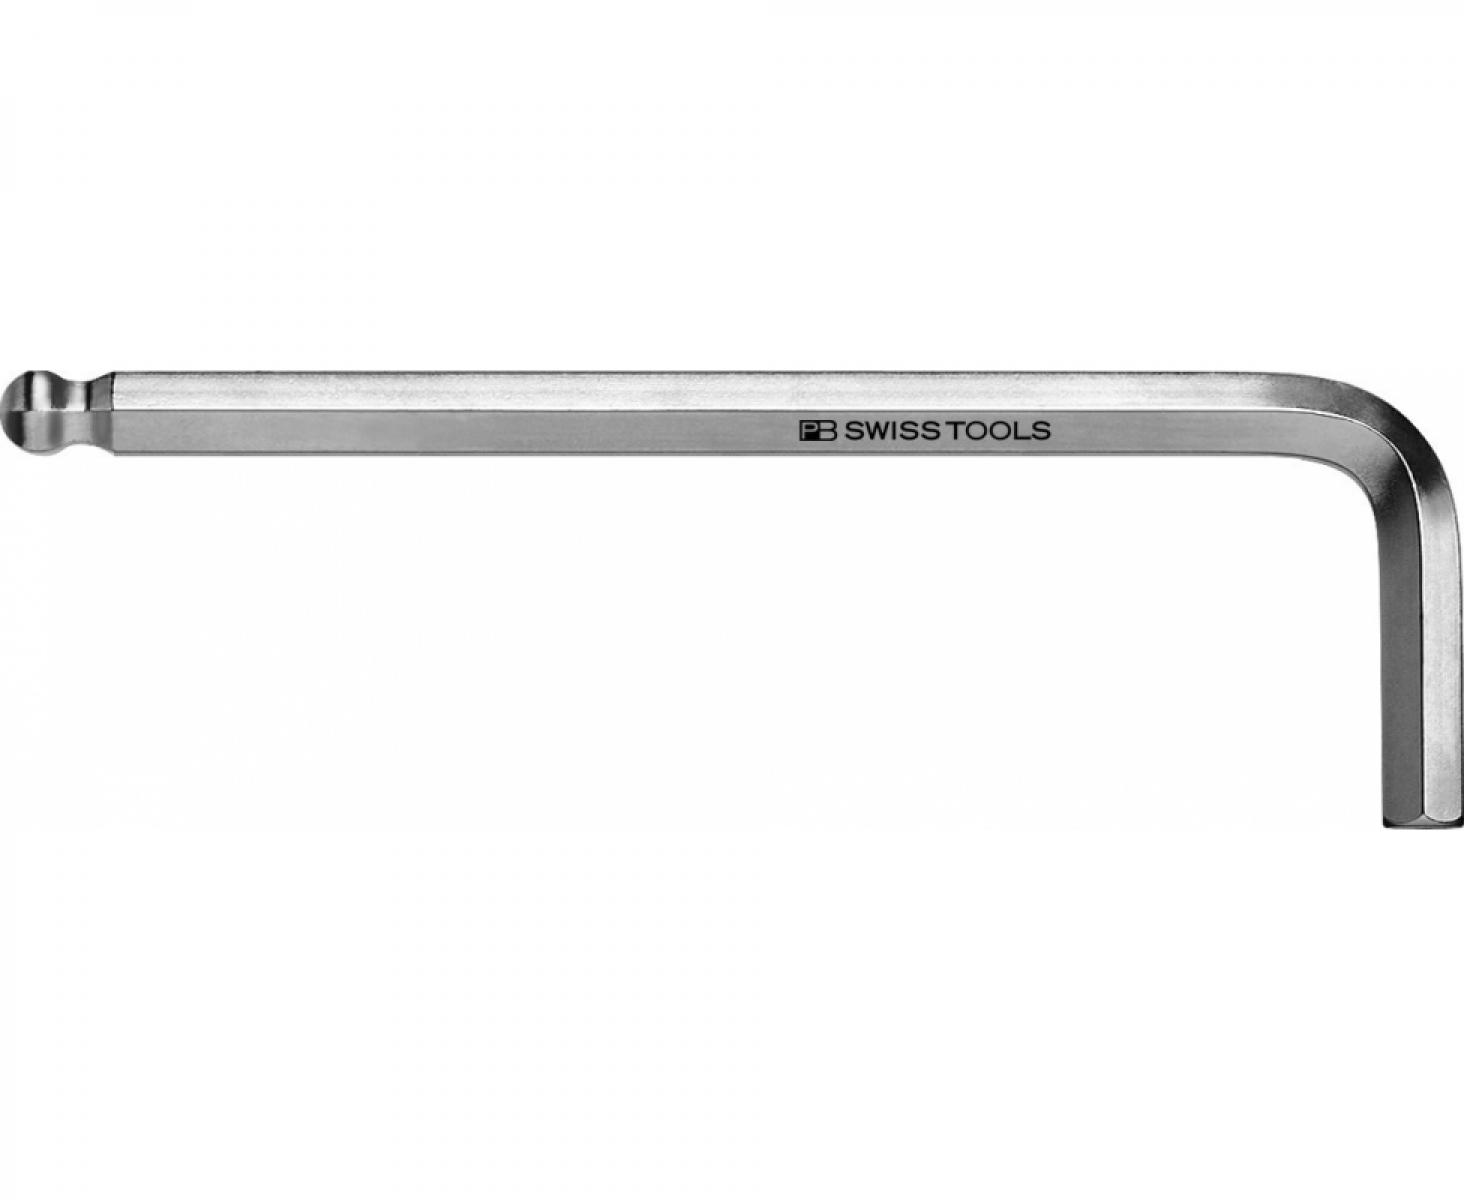 Ключ штифтовый HEX PB Swiss Tools PB 212Z.5/64 со сферической головкой дюймовый